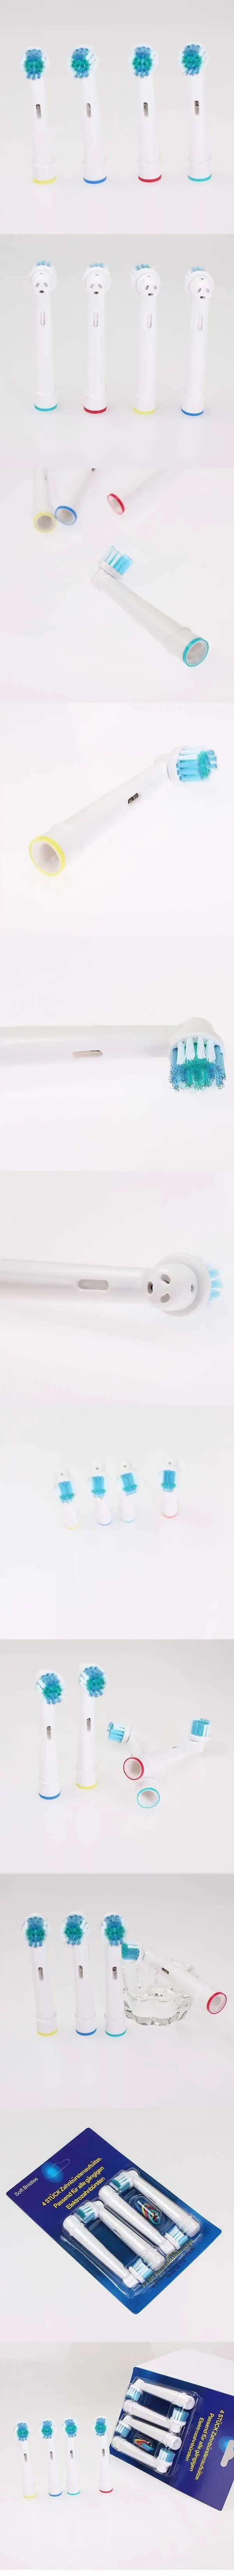 Сменная электрическая зубная щетка CrossAction для OralB teethbrass A